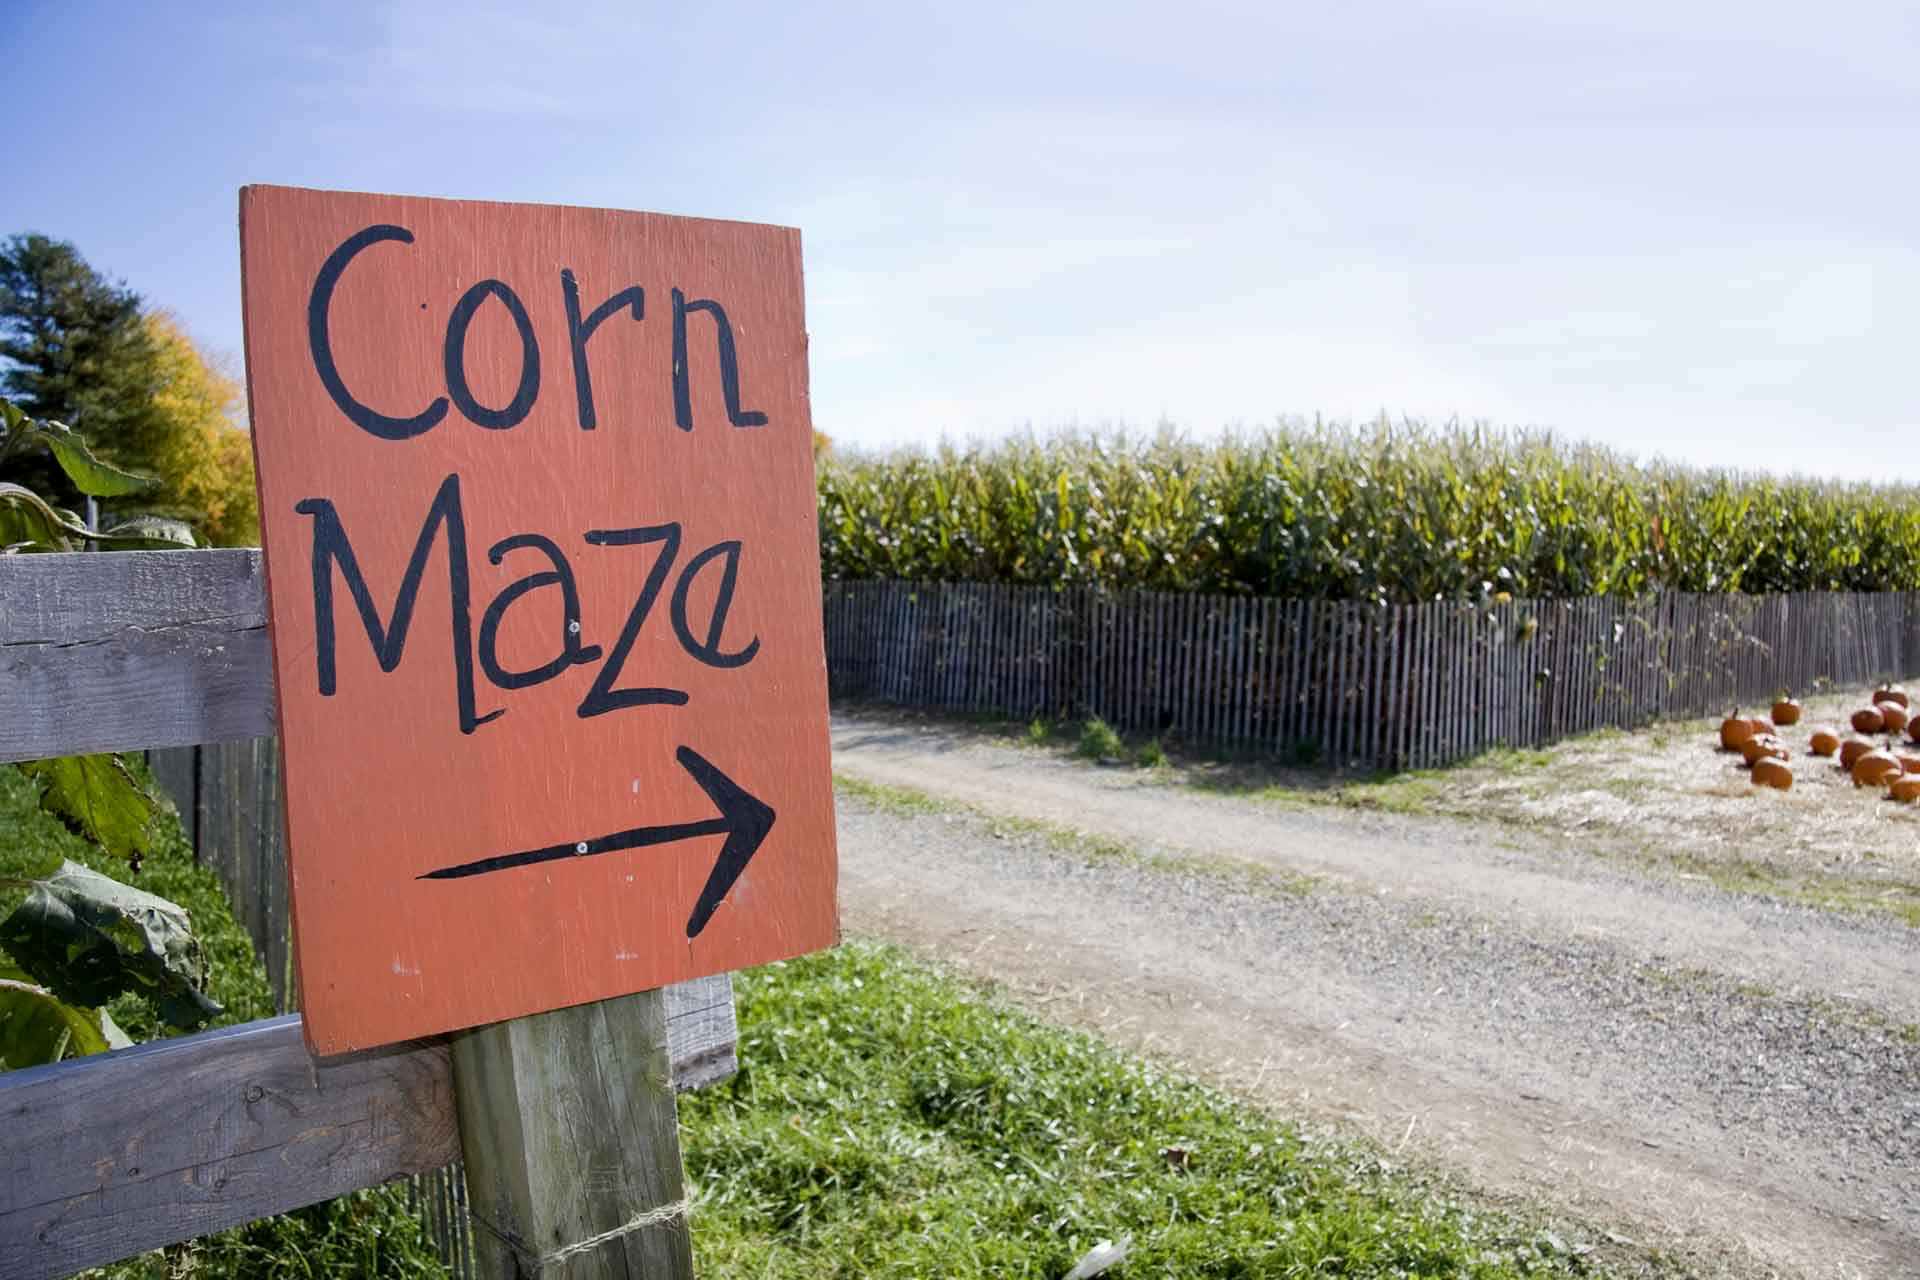 Corn-Maze-1.jpg